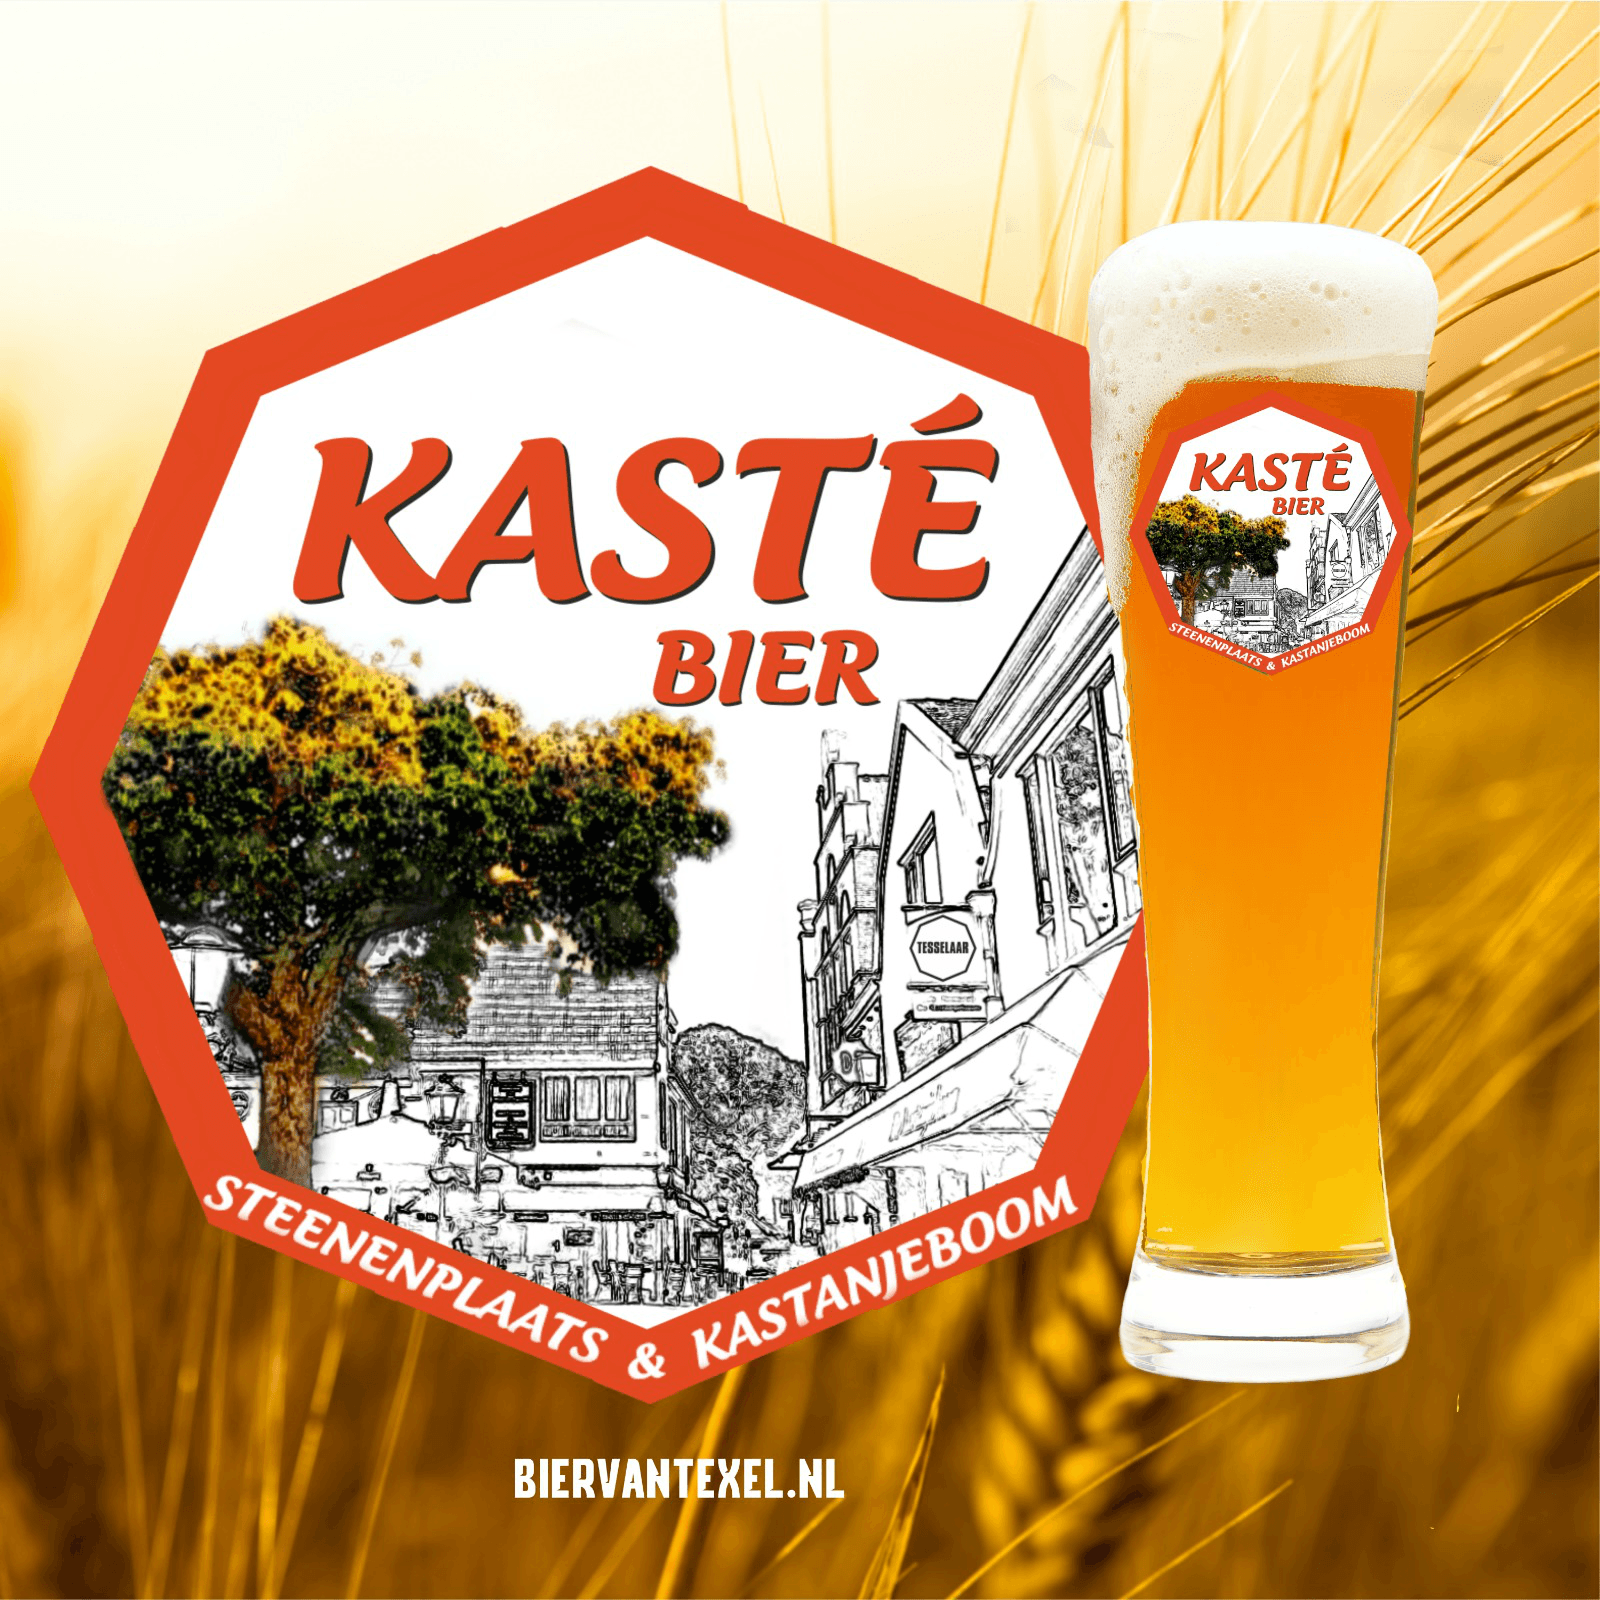 Kasté Bier - Verkrijgbaar bij De Steenenplaats en De Kastanjeboom, gebrouwen door Tesselaar Familiebrouwerij Diks